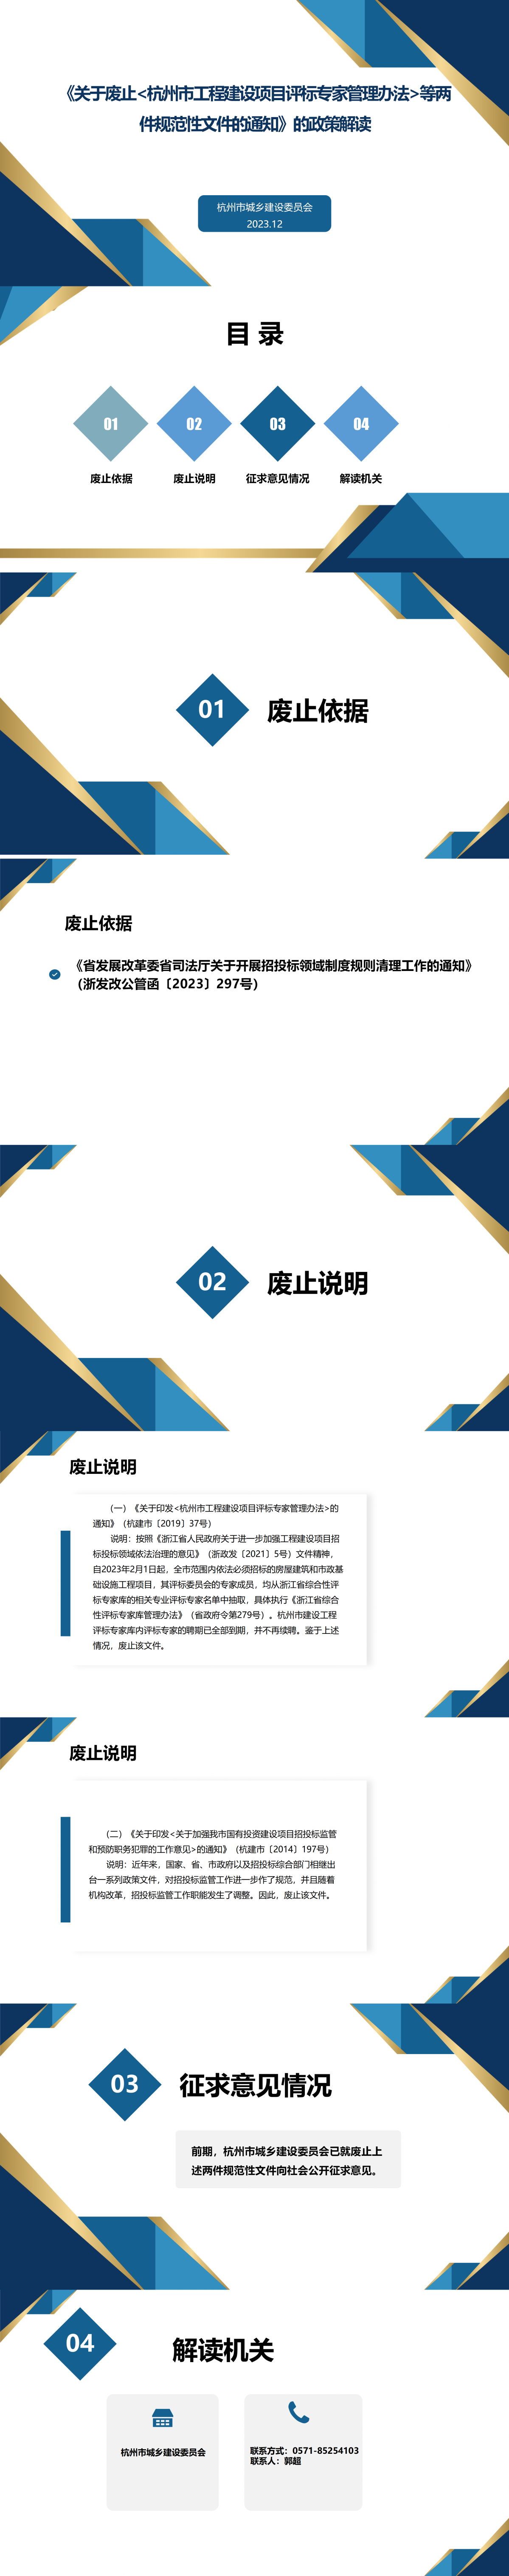 《关于废止杭州市工程建设项目评标专家管理办法等两件规范性文件的通知》的政策解读_01.png